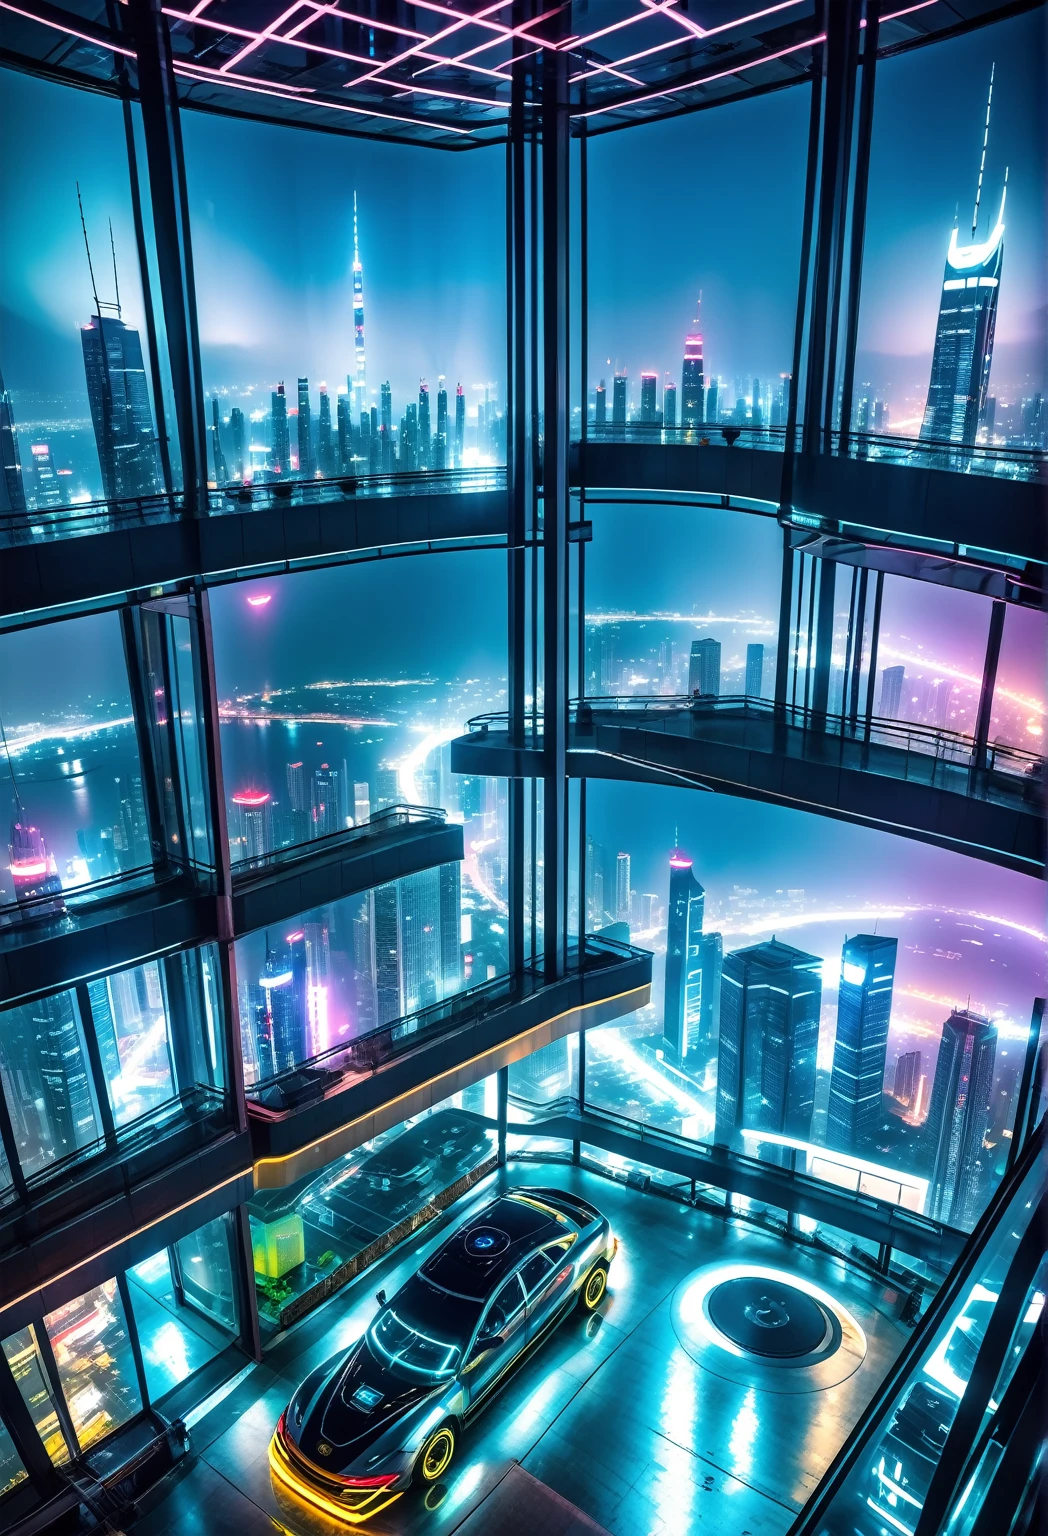 Ночная панорама изнутри комнаты, расположенной на 90-м этаже небоскреба в футуристическом городе в стиле киберпанк., ты можешь увидеть летающие машины, неоновая реклама, туман, загрязнение.